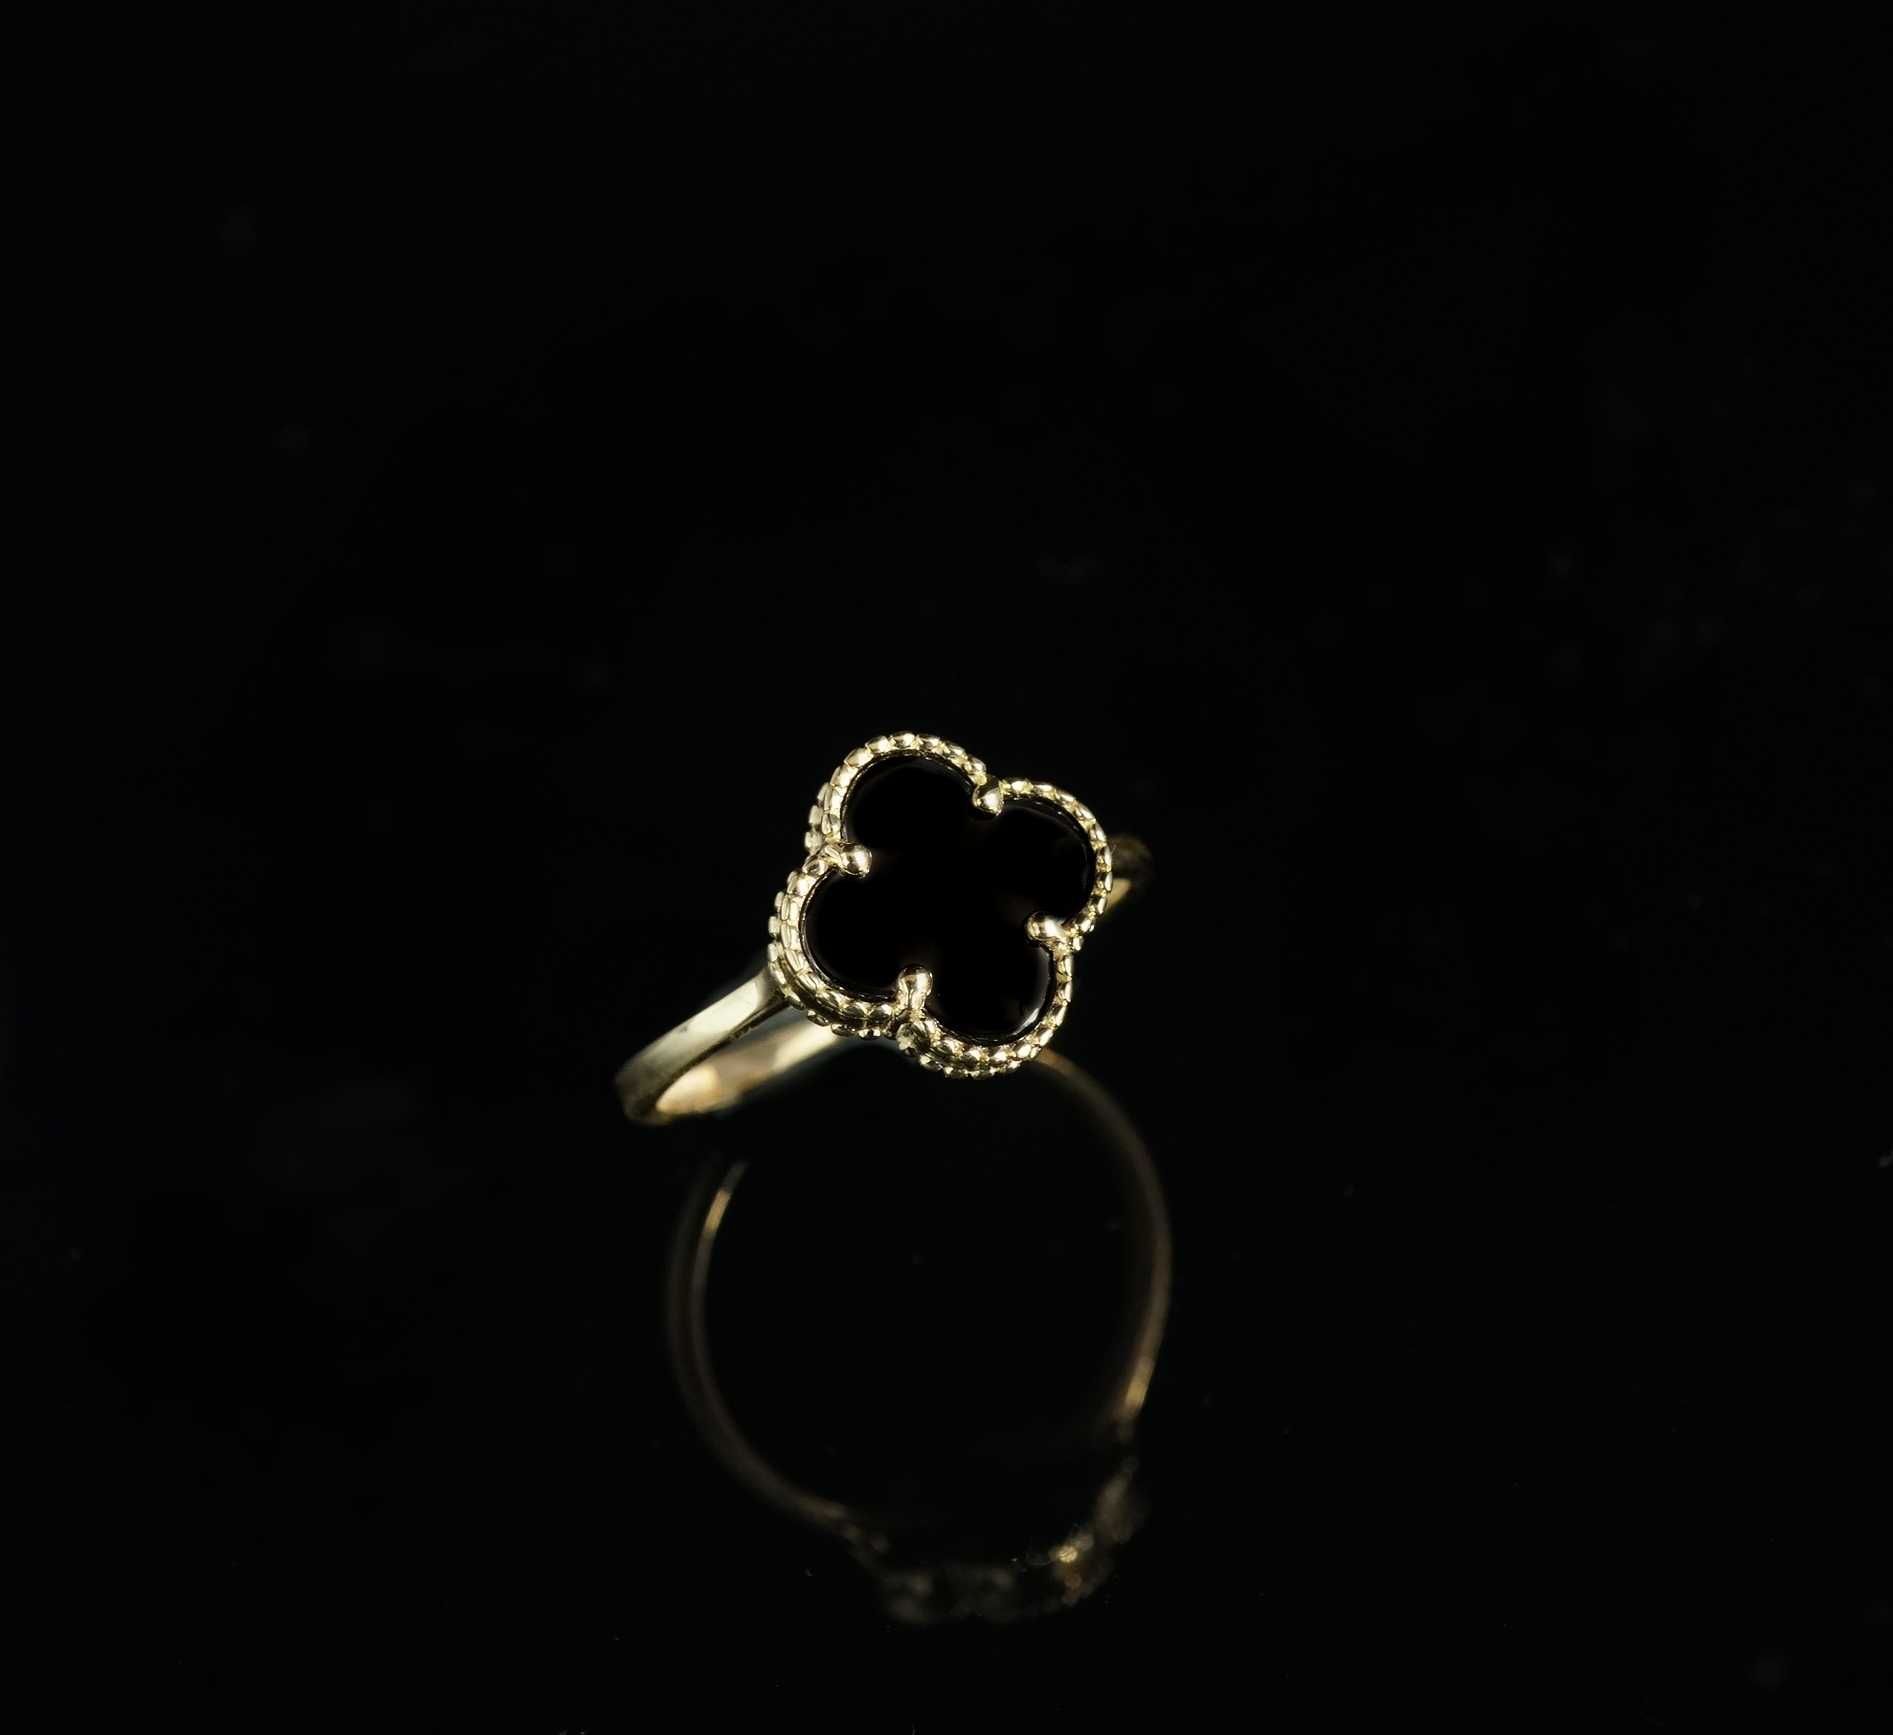 Złoto 585 - Złoty pierścionek damski Koniczynka  Rozmiar 21